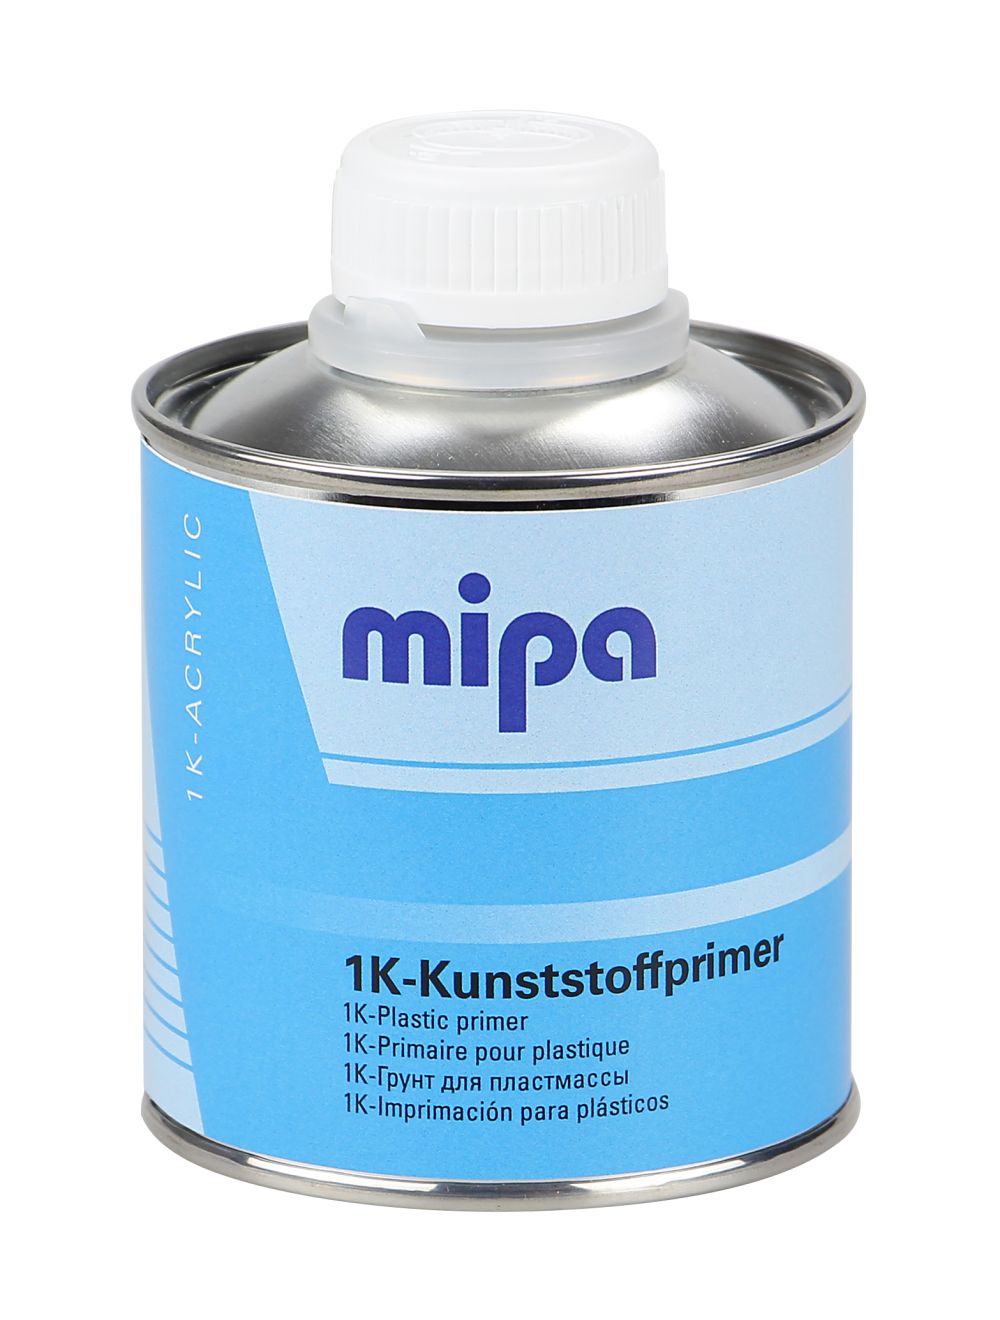 Mipa 1K Kunststoffprimer 250 ml